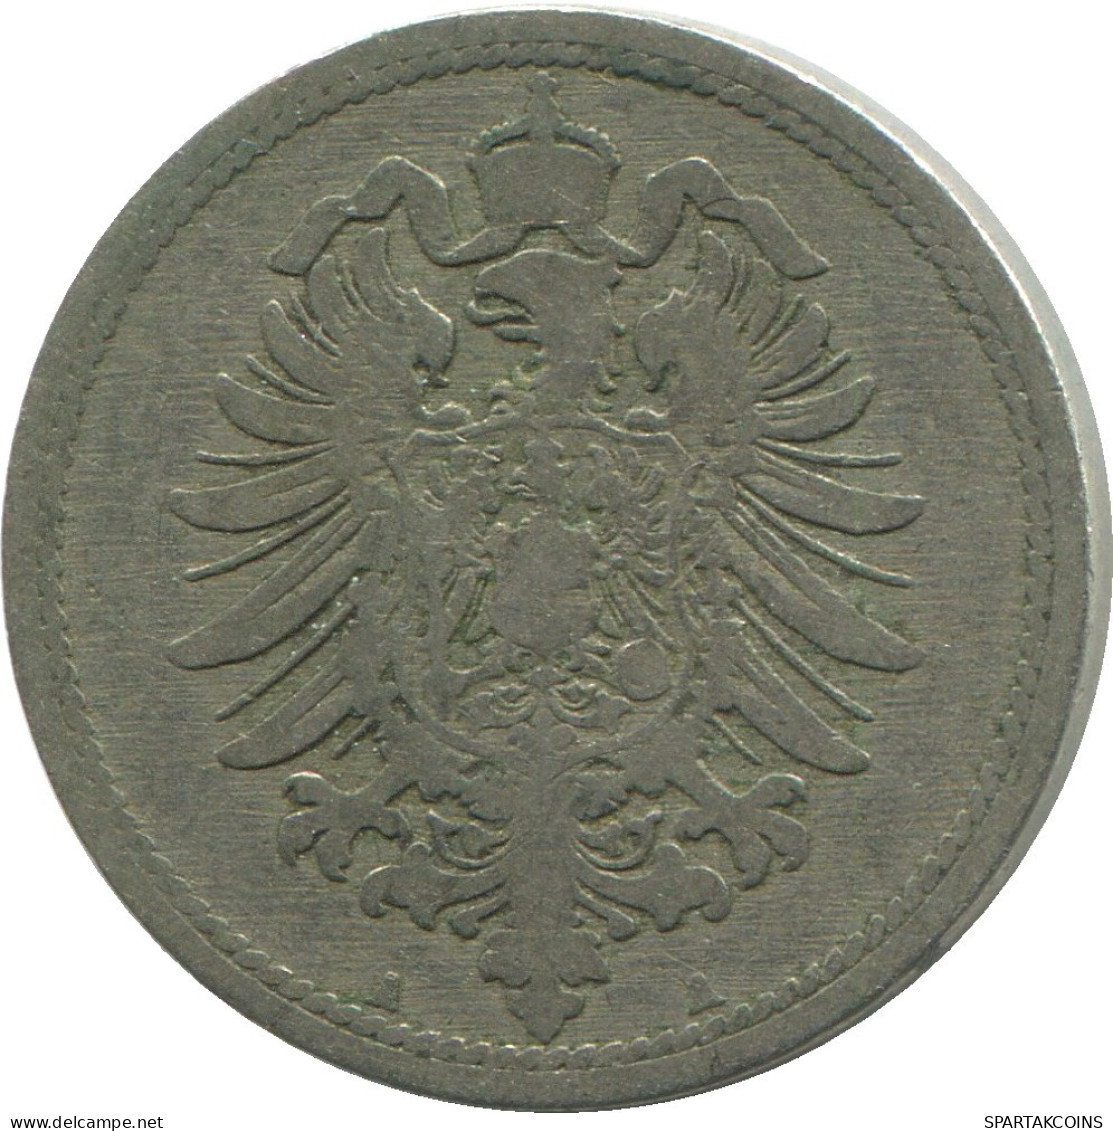 10 PFENNIG 1889 A GERMANY Coin #DE10452.5.U.A - 10 Pfennig